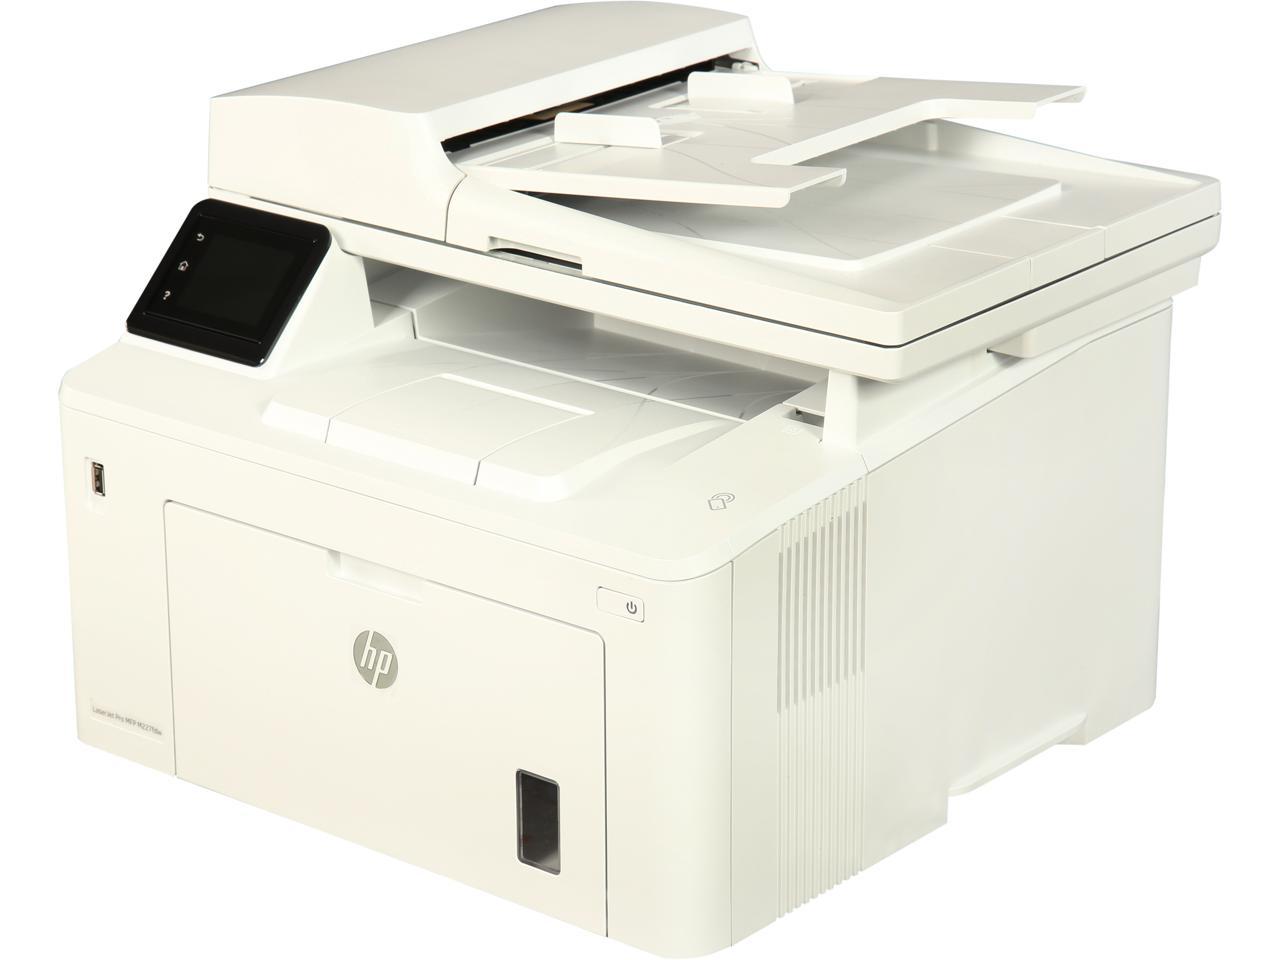 HP LaserJet Pro M227fdw (G3Q75A#BGJ) Duplex 1200 x 1200 DPI Wireless/USB Monochrome Laser MFP Printer